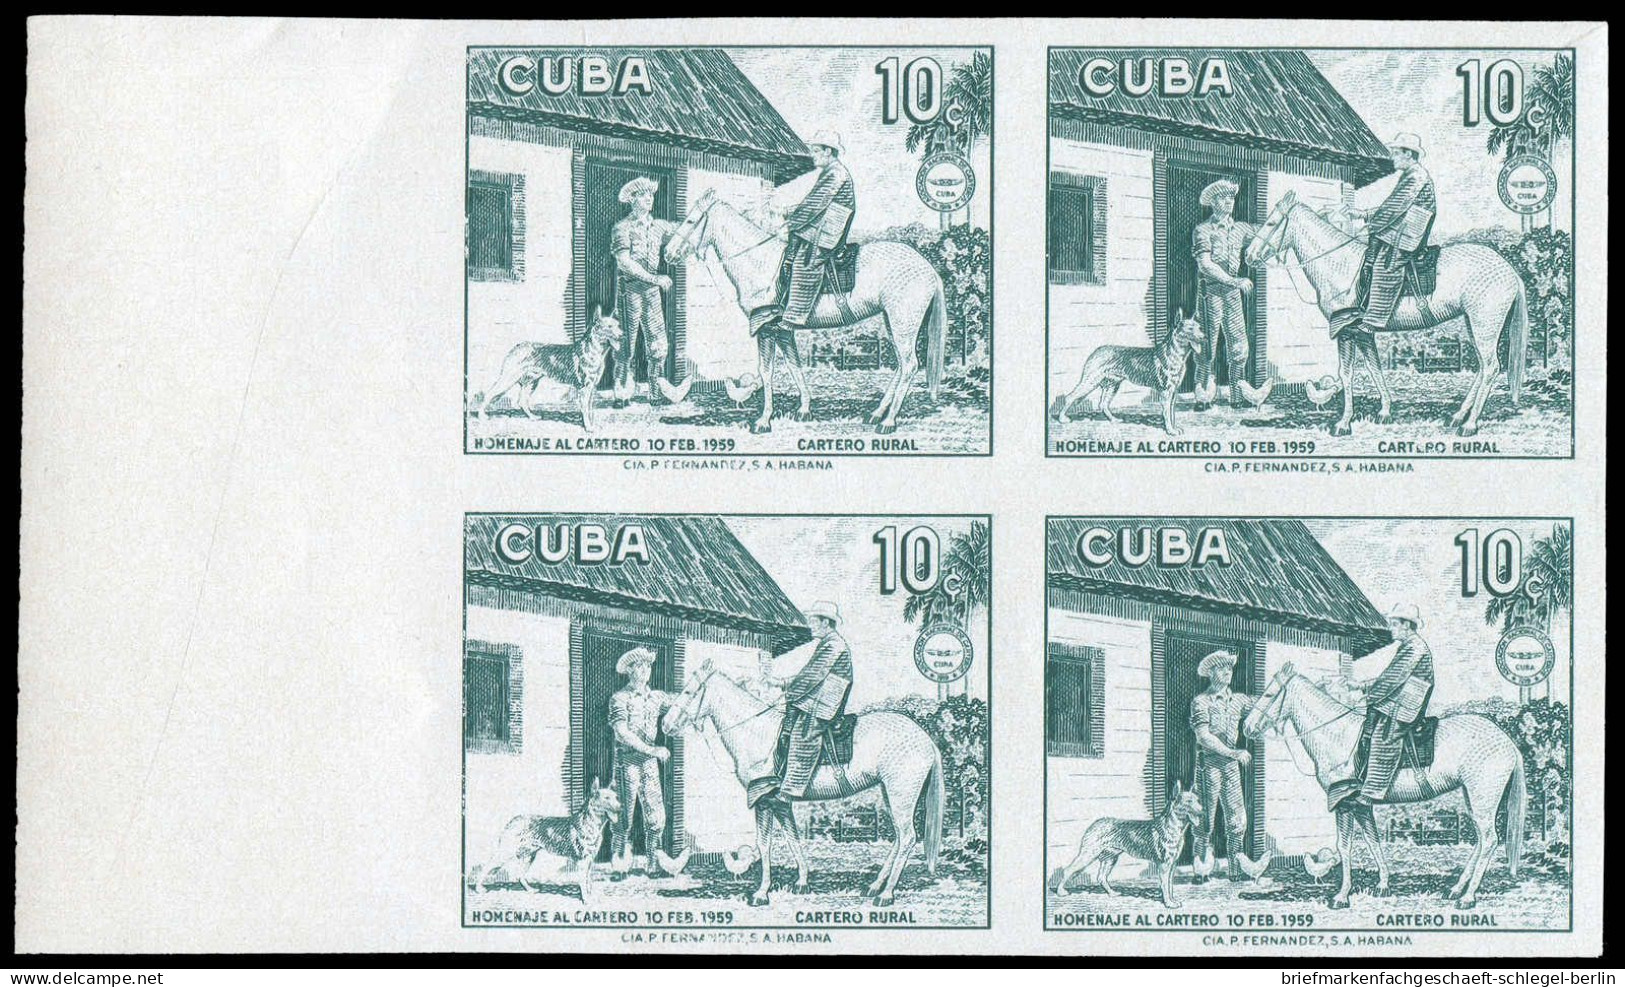 Cuba, 1959 - Cuba